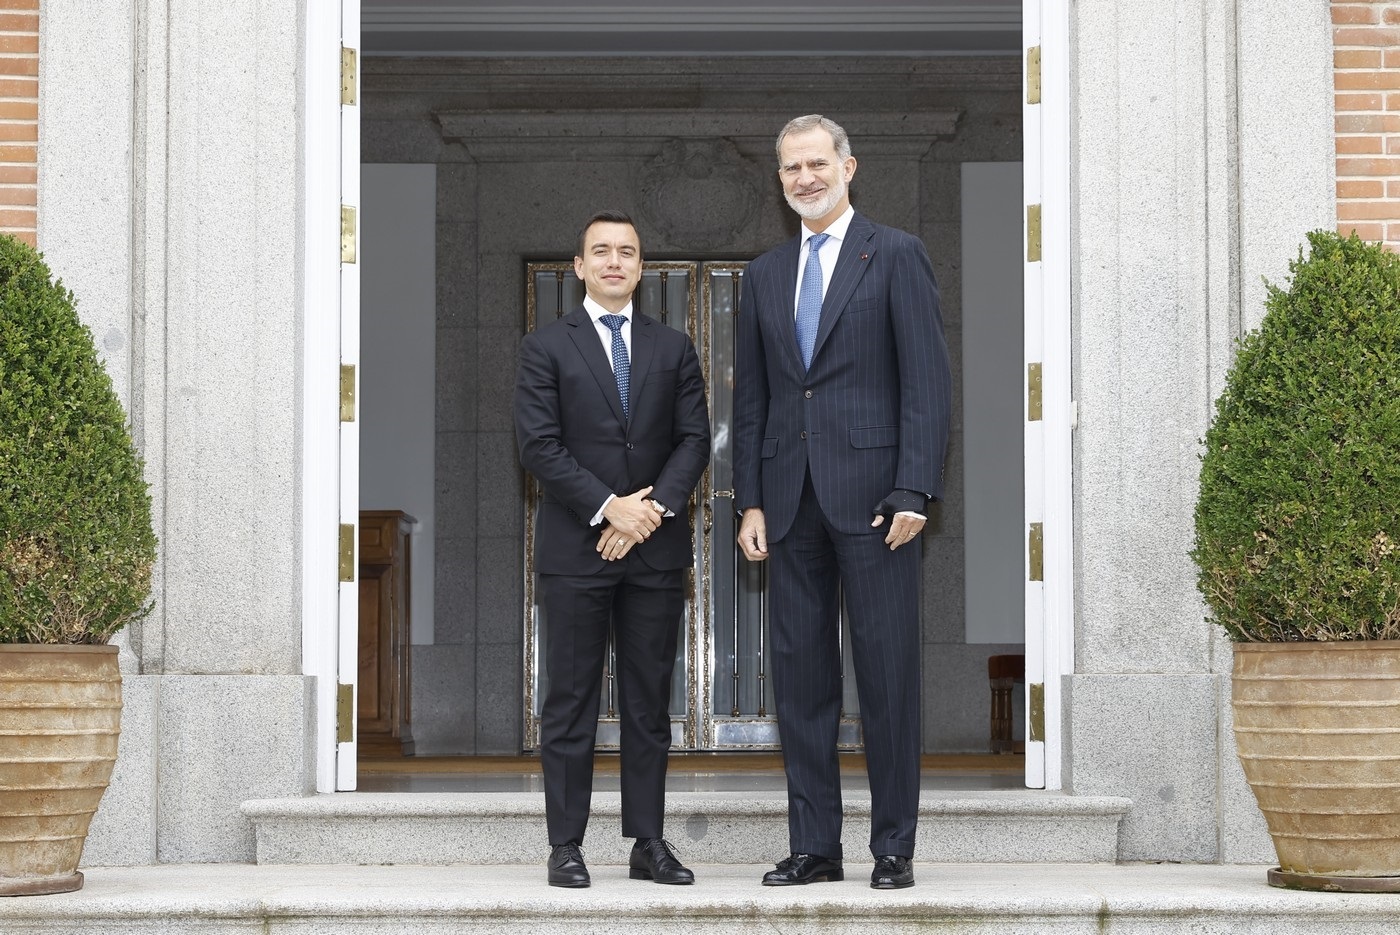 Presidente de Ecuador Daniel Noboa se reúne con el Rey de España y el presidente español